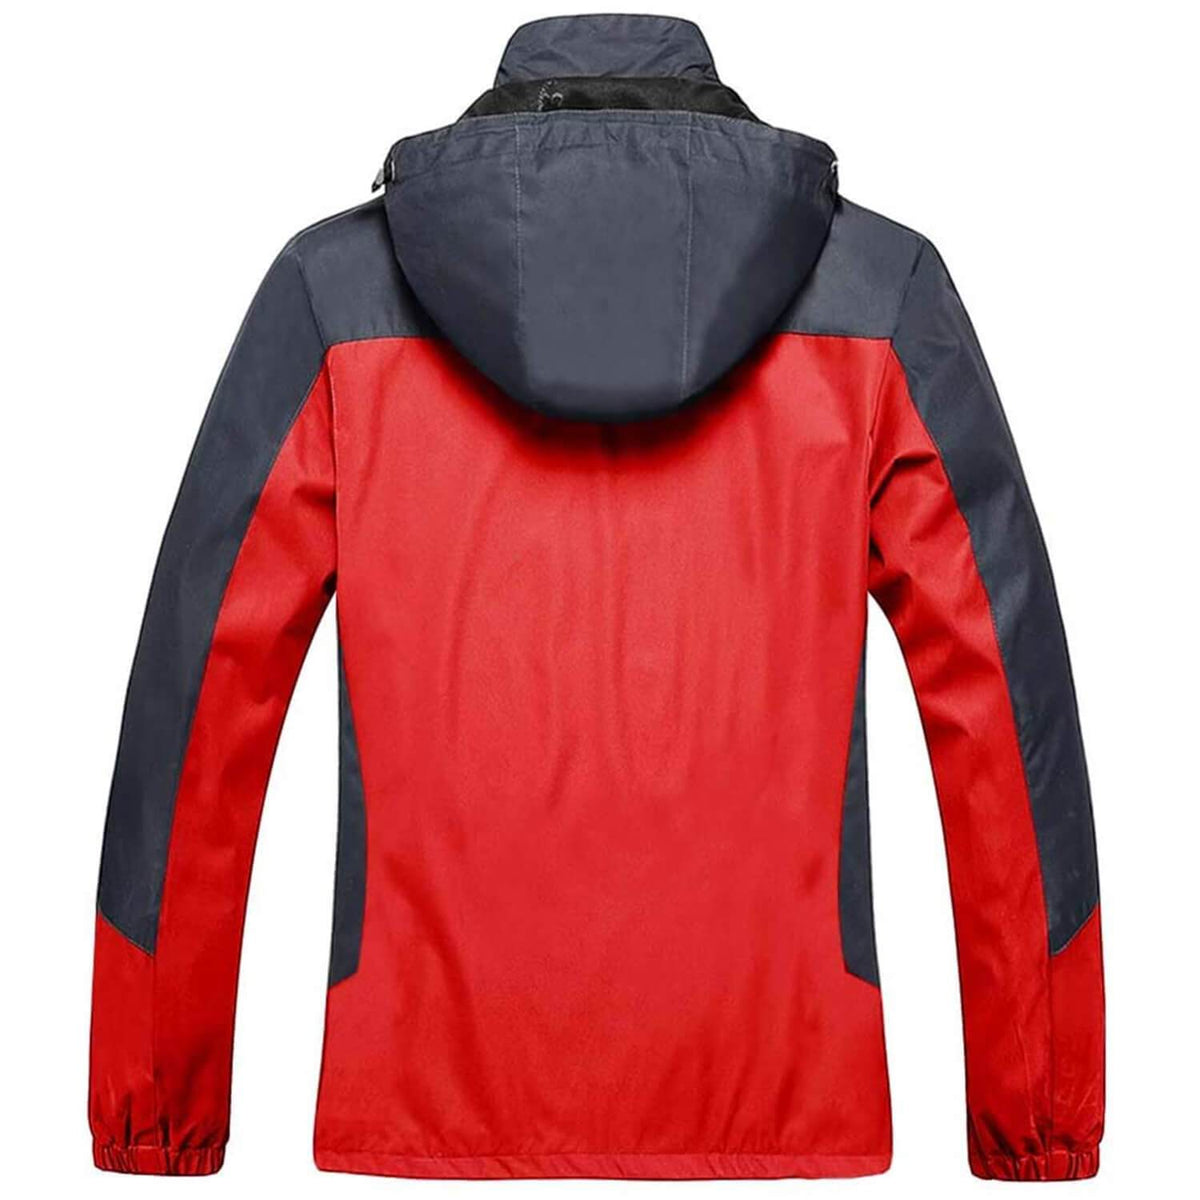 Women's Water-Resistant Rain Jacket 